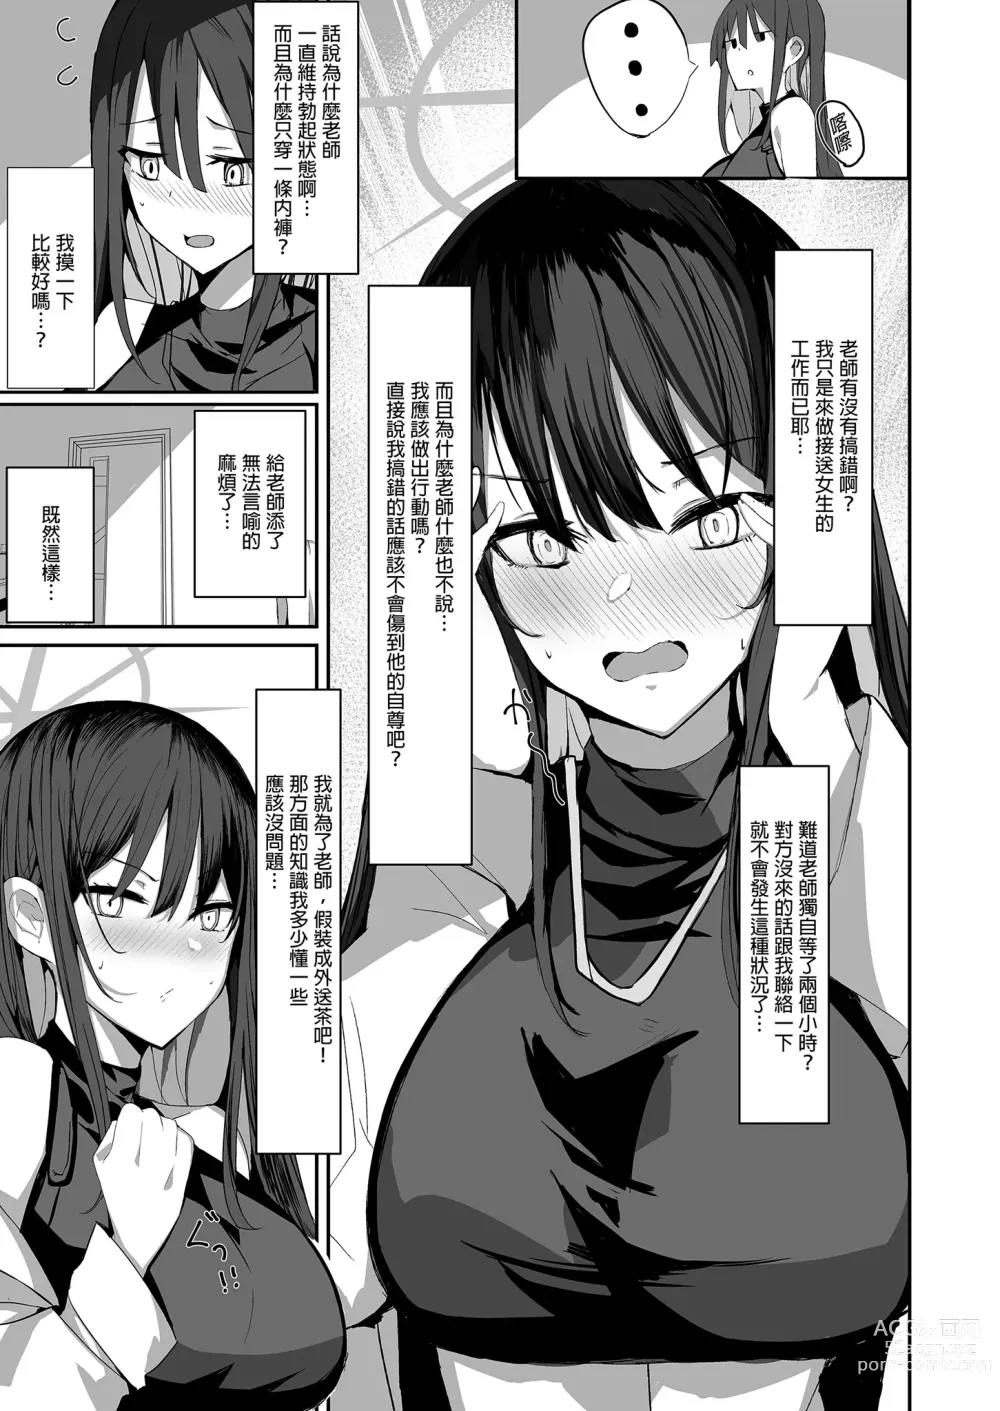 Page 9 of doujinshi 叫了外送妹來的卻是沙織於是便將計就計1 (decensored)